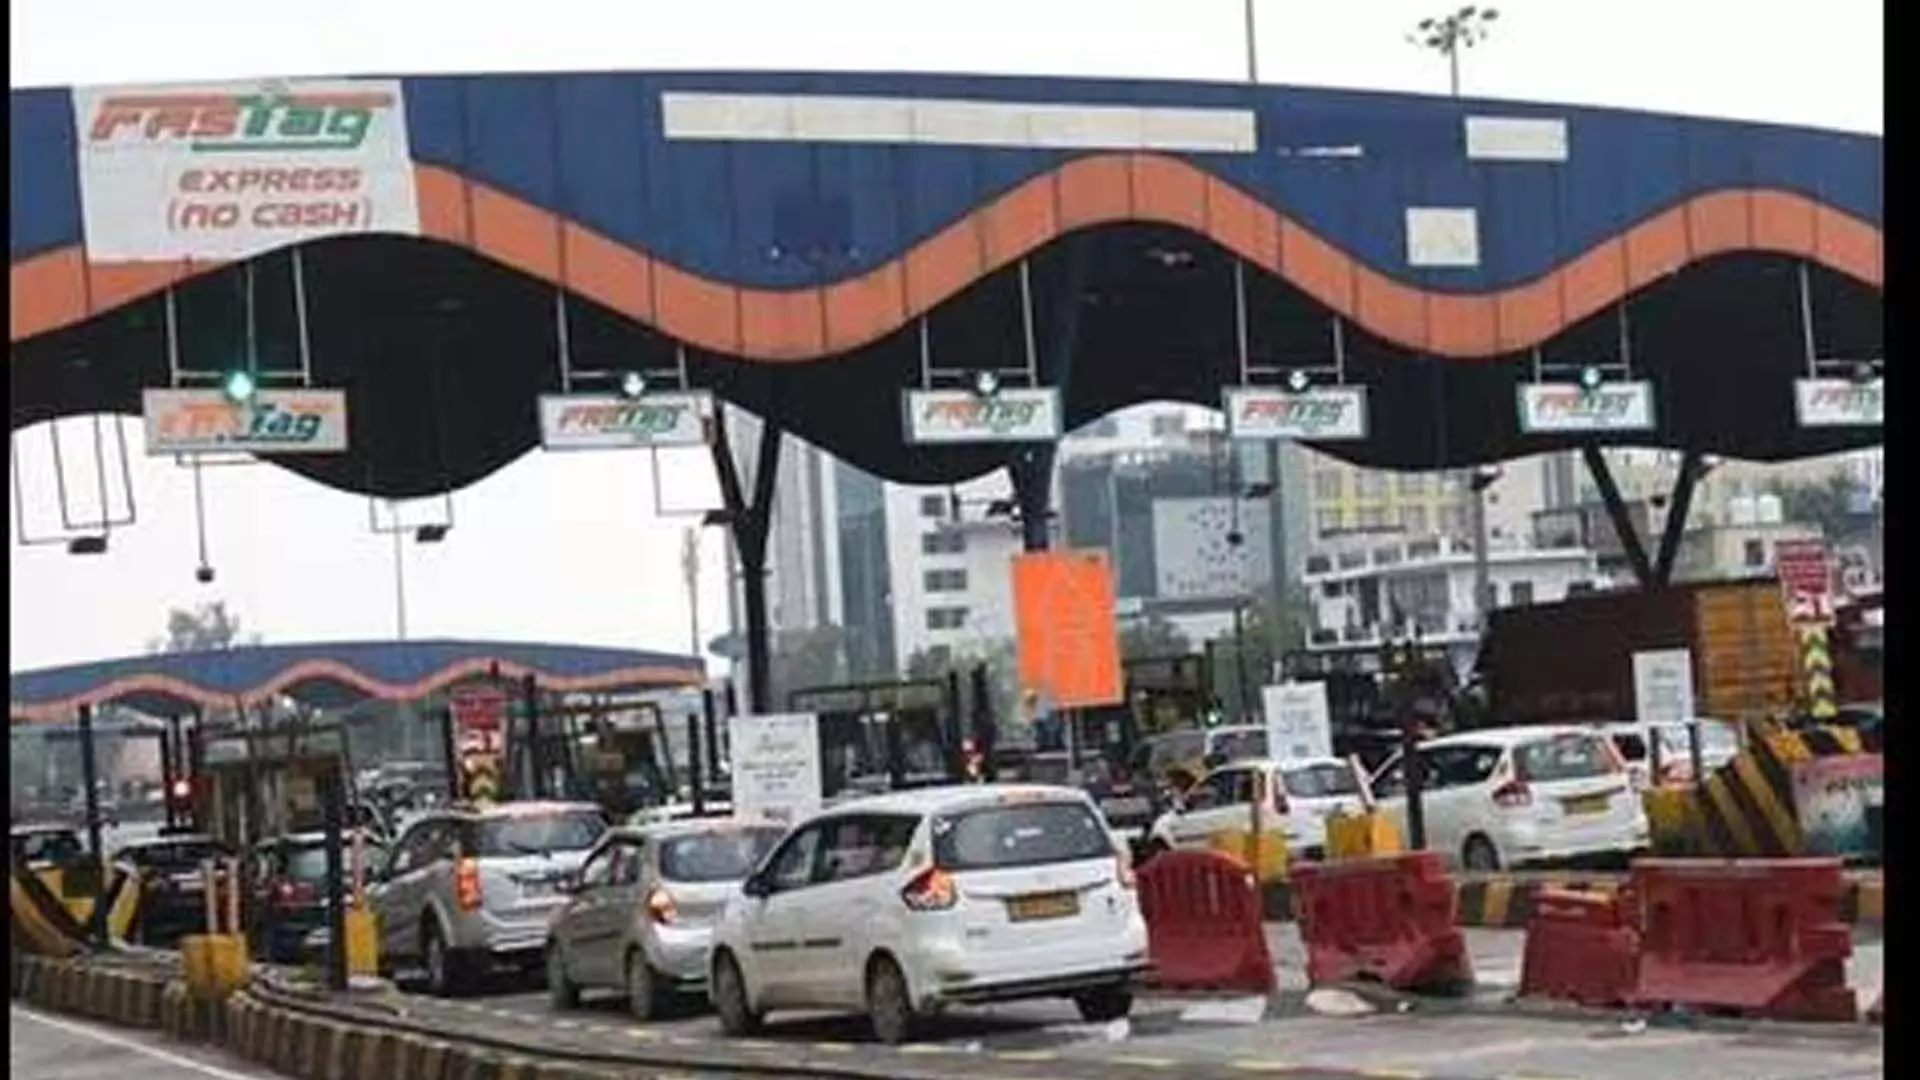 Delhi Traffic: एमसीडी ने 3 आरएफआईडी-आधारित पार्किंग स्थल चालू किए